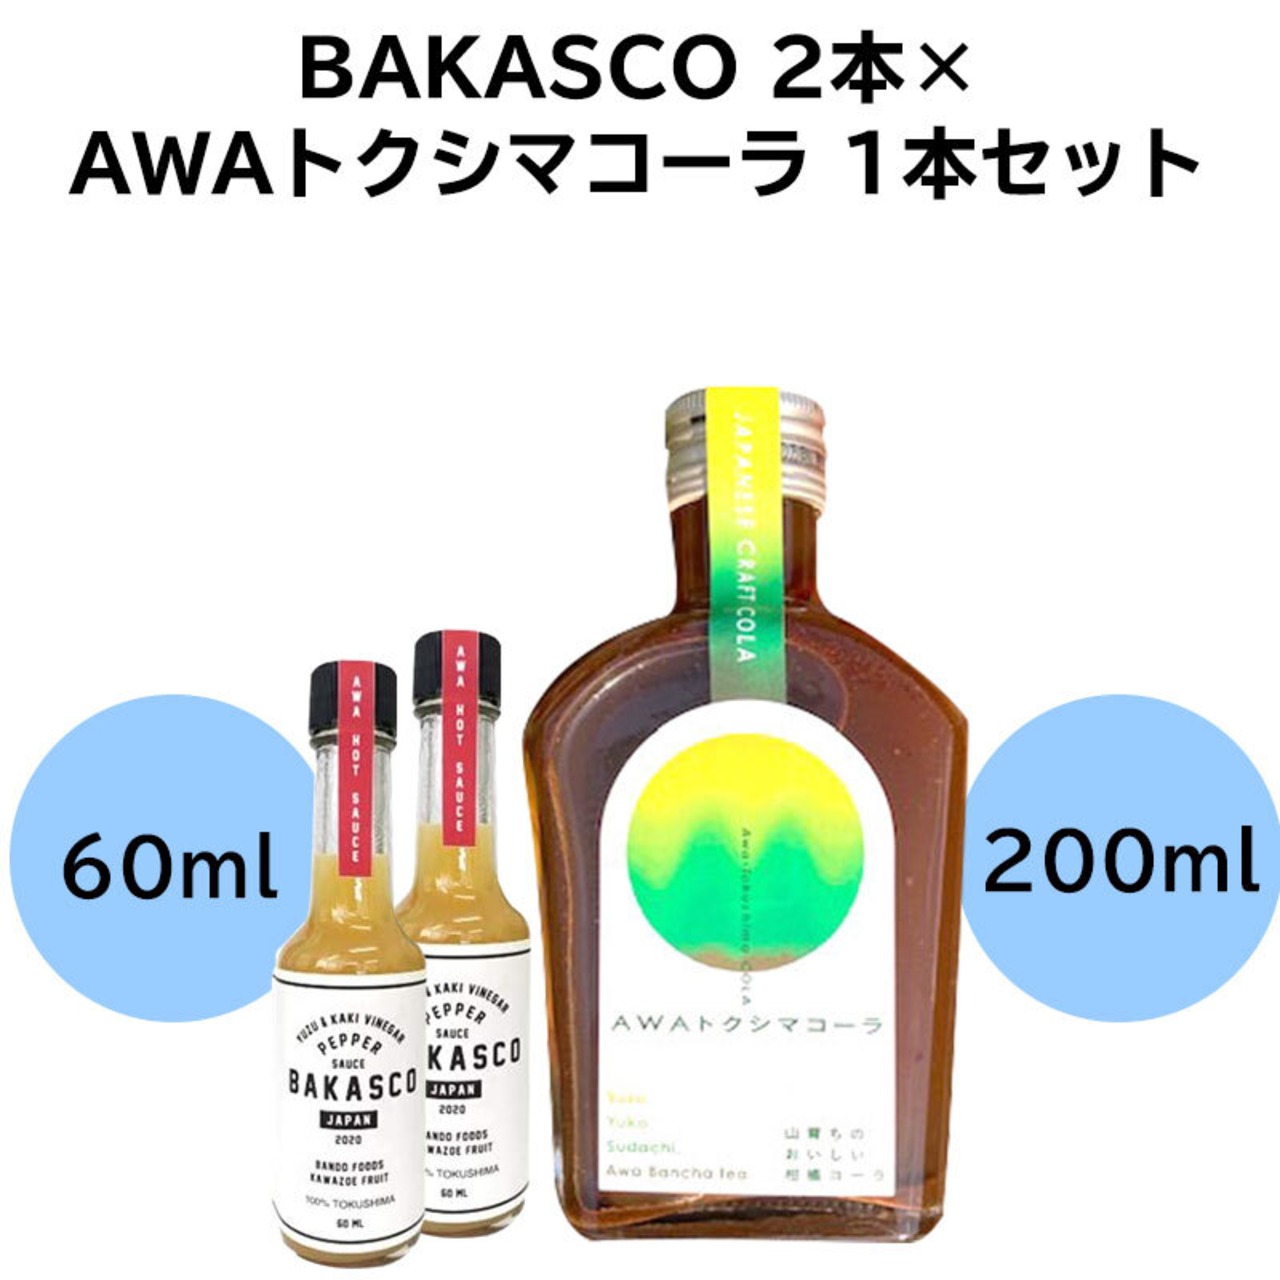 BAKASCO 2本 60ml × AWAトクシマコーラ 1本セット 200ml バカスコ ペッパーソース 調味料 阿波晩茶 乳酸発酵茶